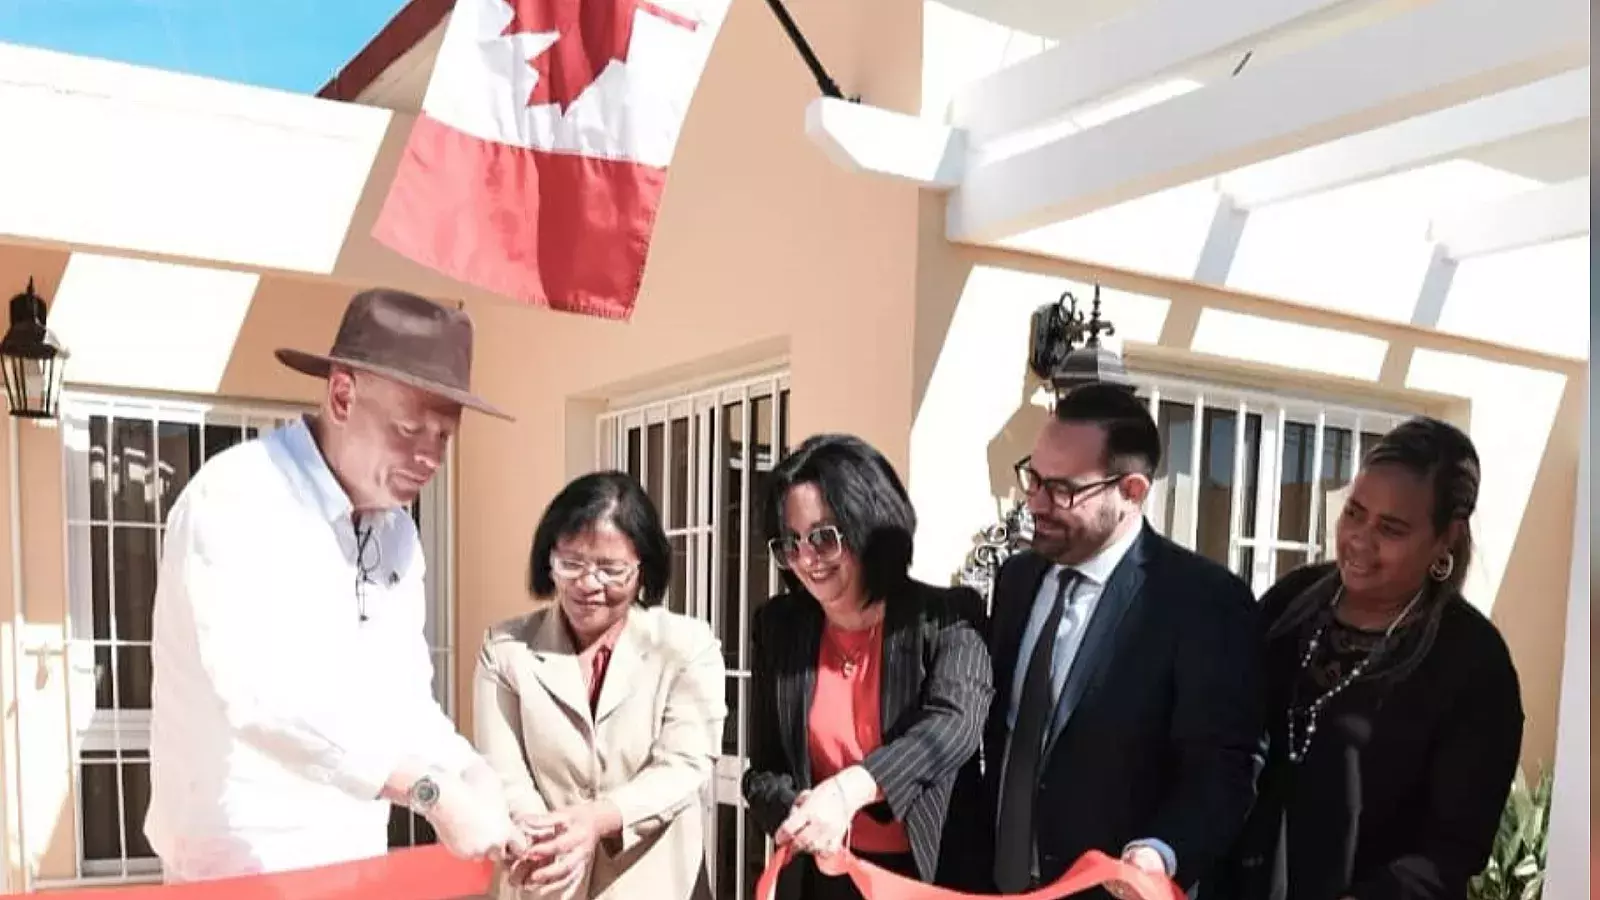 Abren nueva oficina consular de Canadá en Varadero